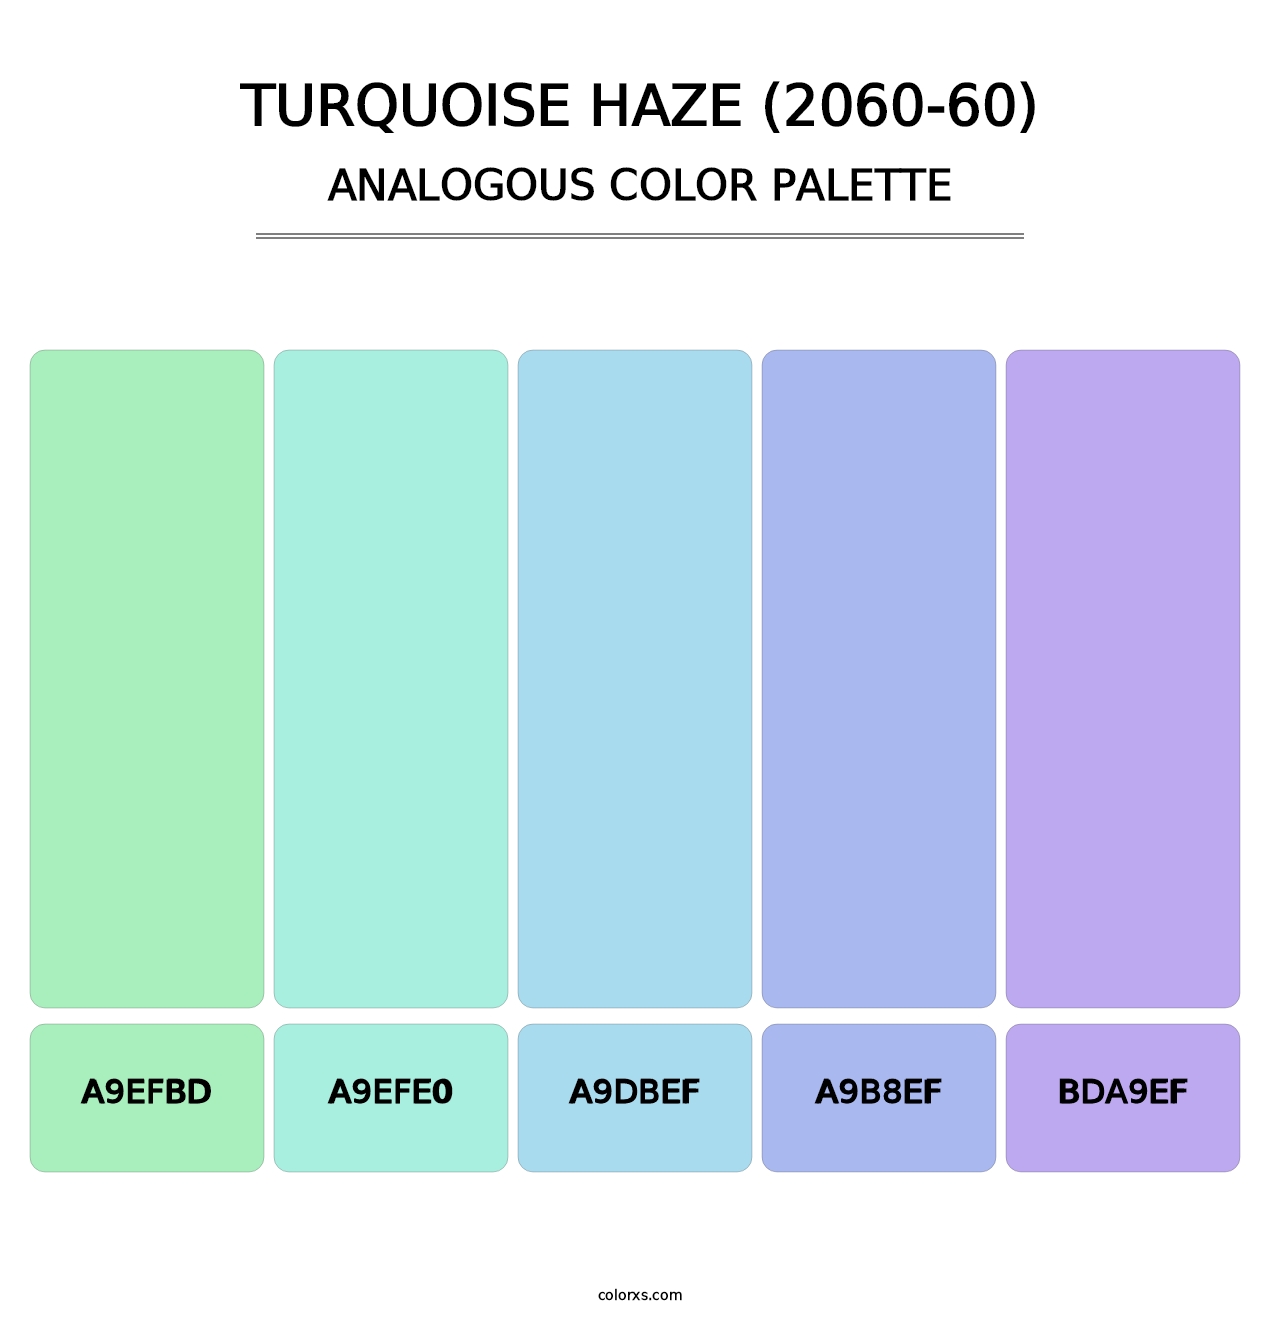 Turquoise Haze (2060-60) - Analogous Color Palette